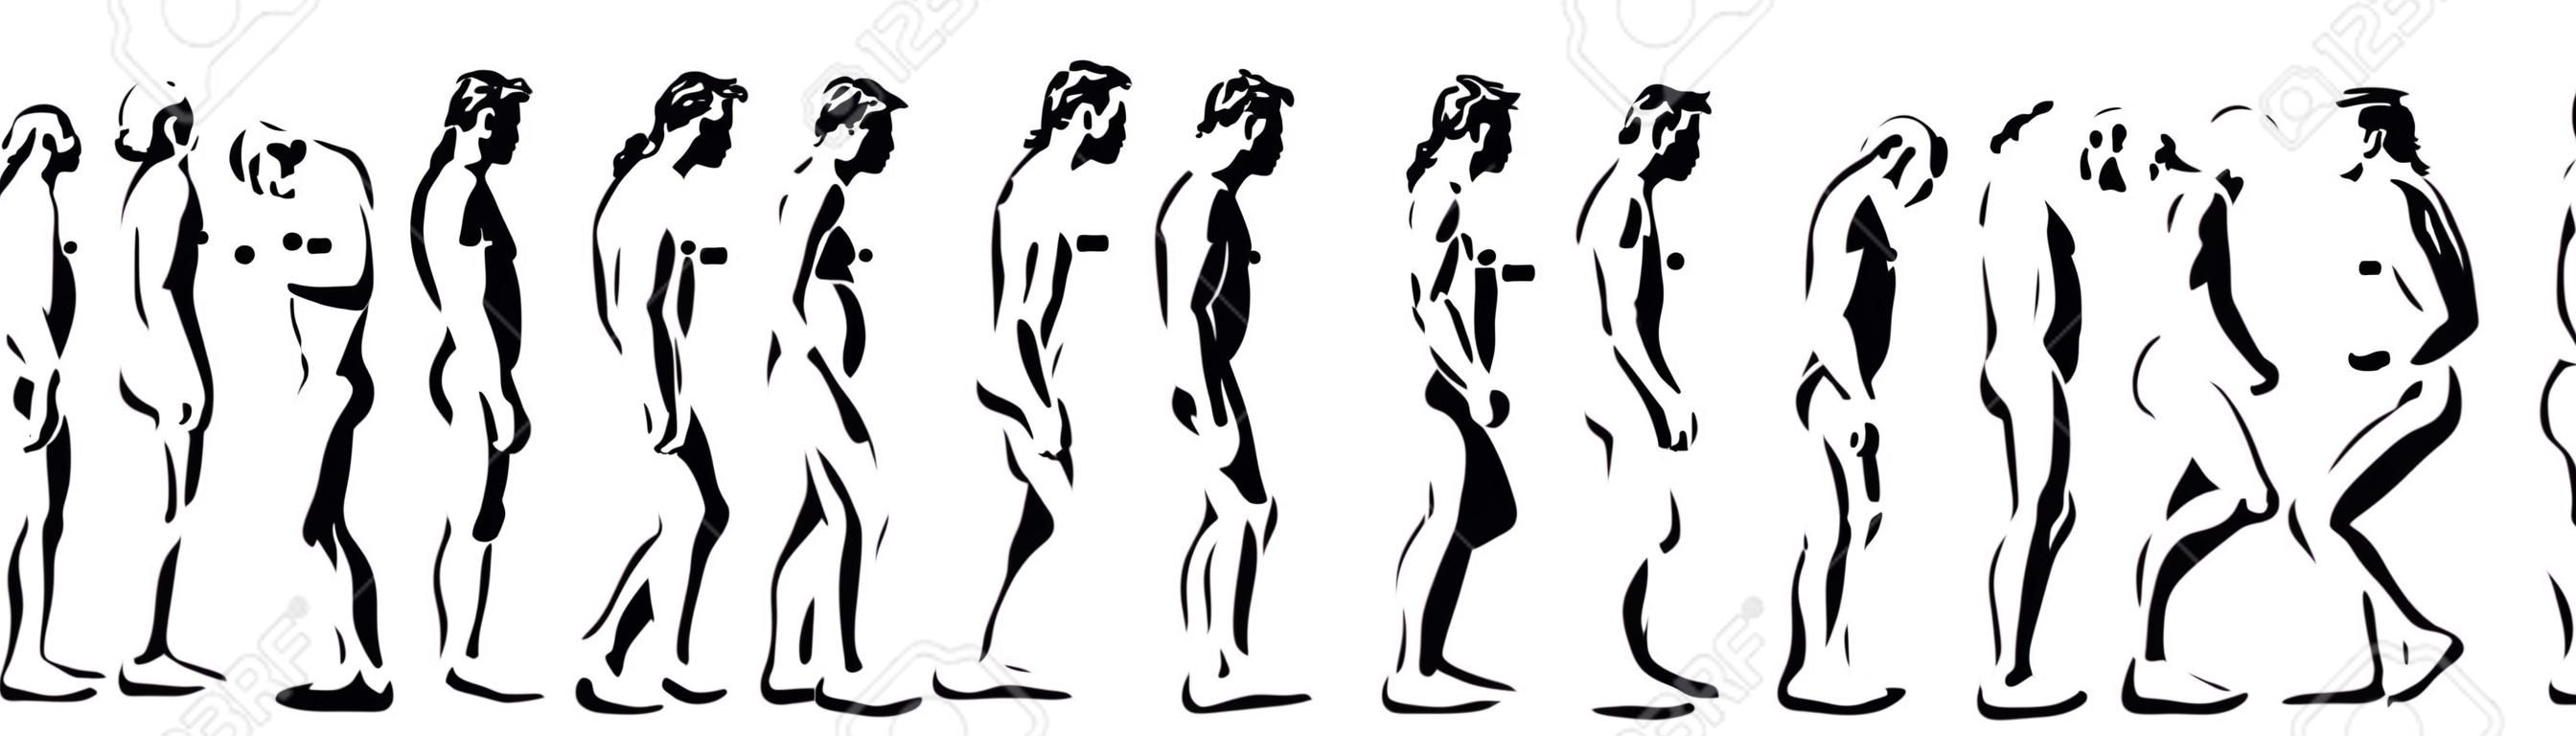 la evolución humana tiempo en la computadora ilustración